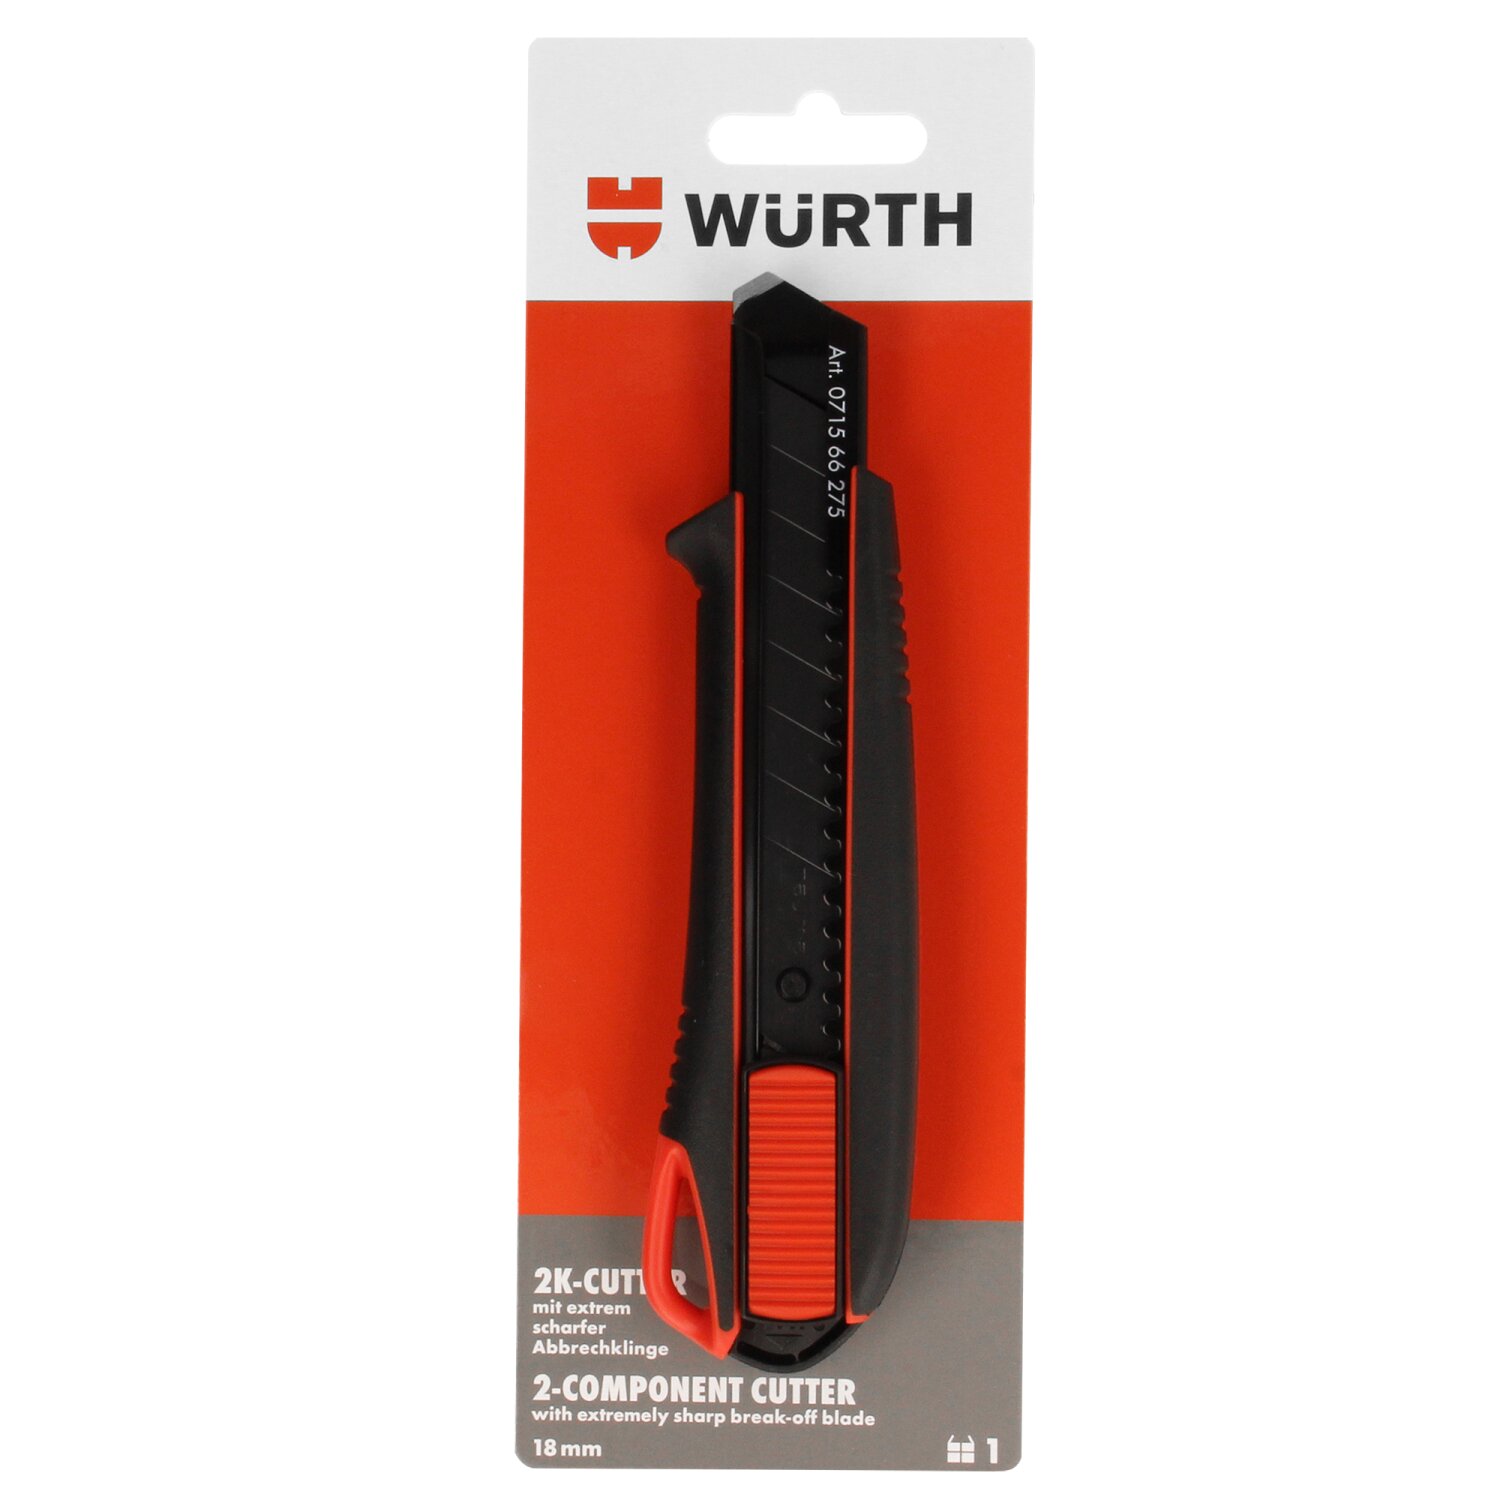 Würth Cuttermesser 2K Griff mit Schieber 18mm inkl. 3 Abbrechklingen,,  14,32 €